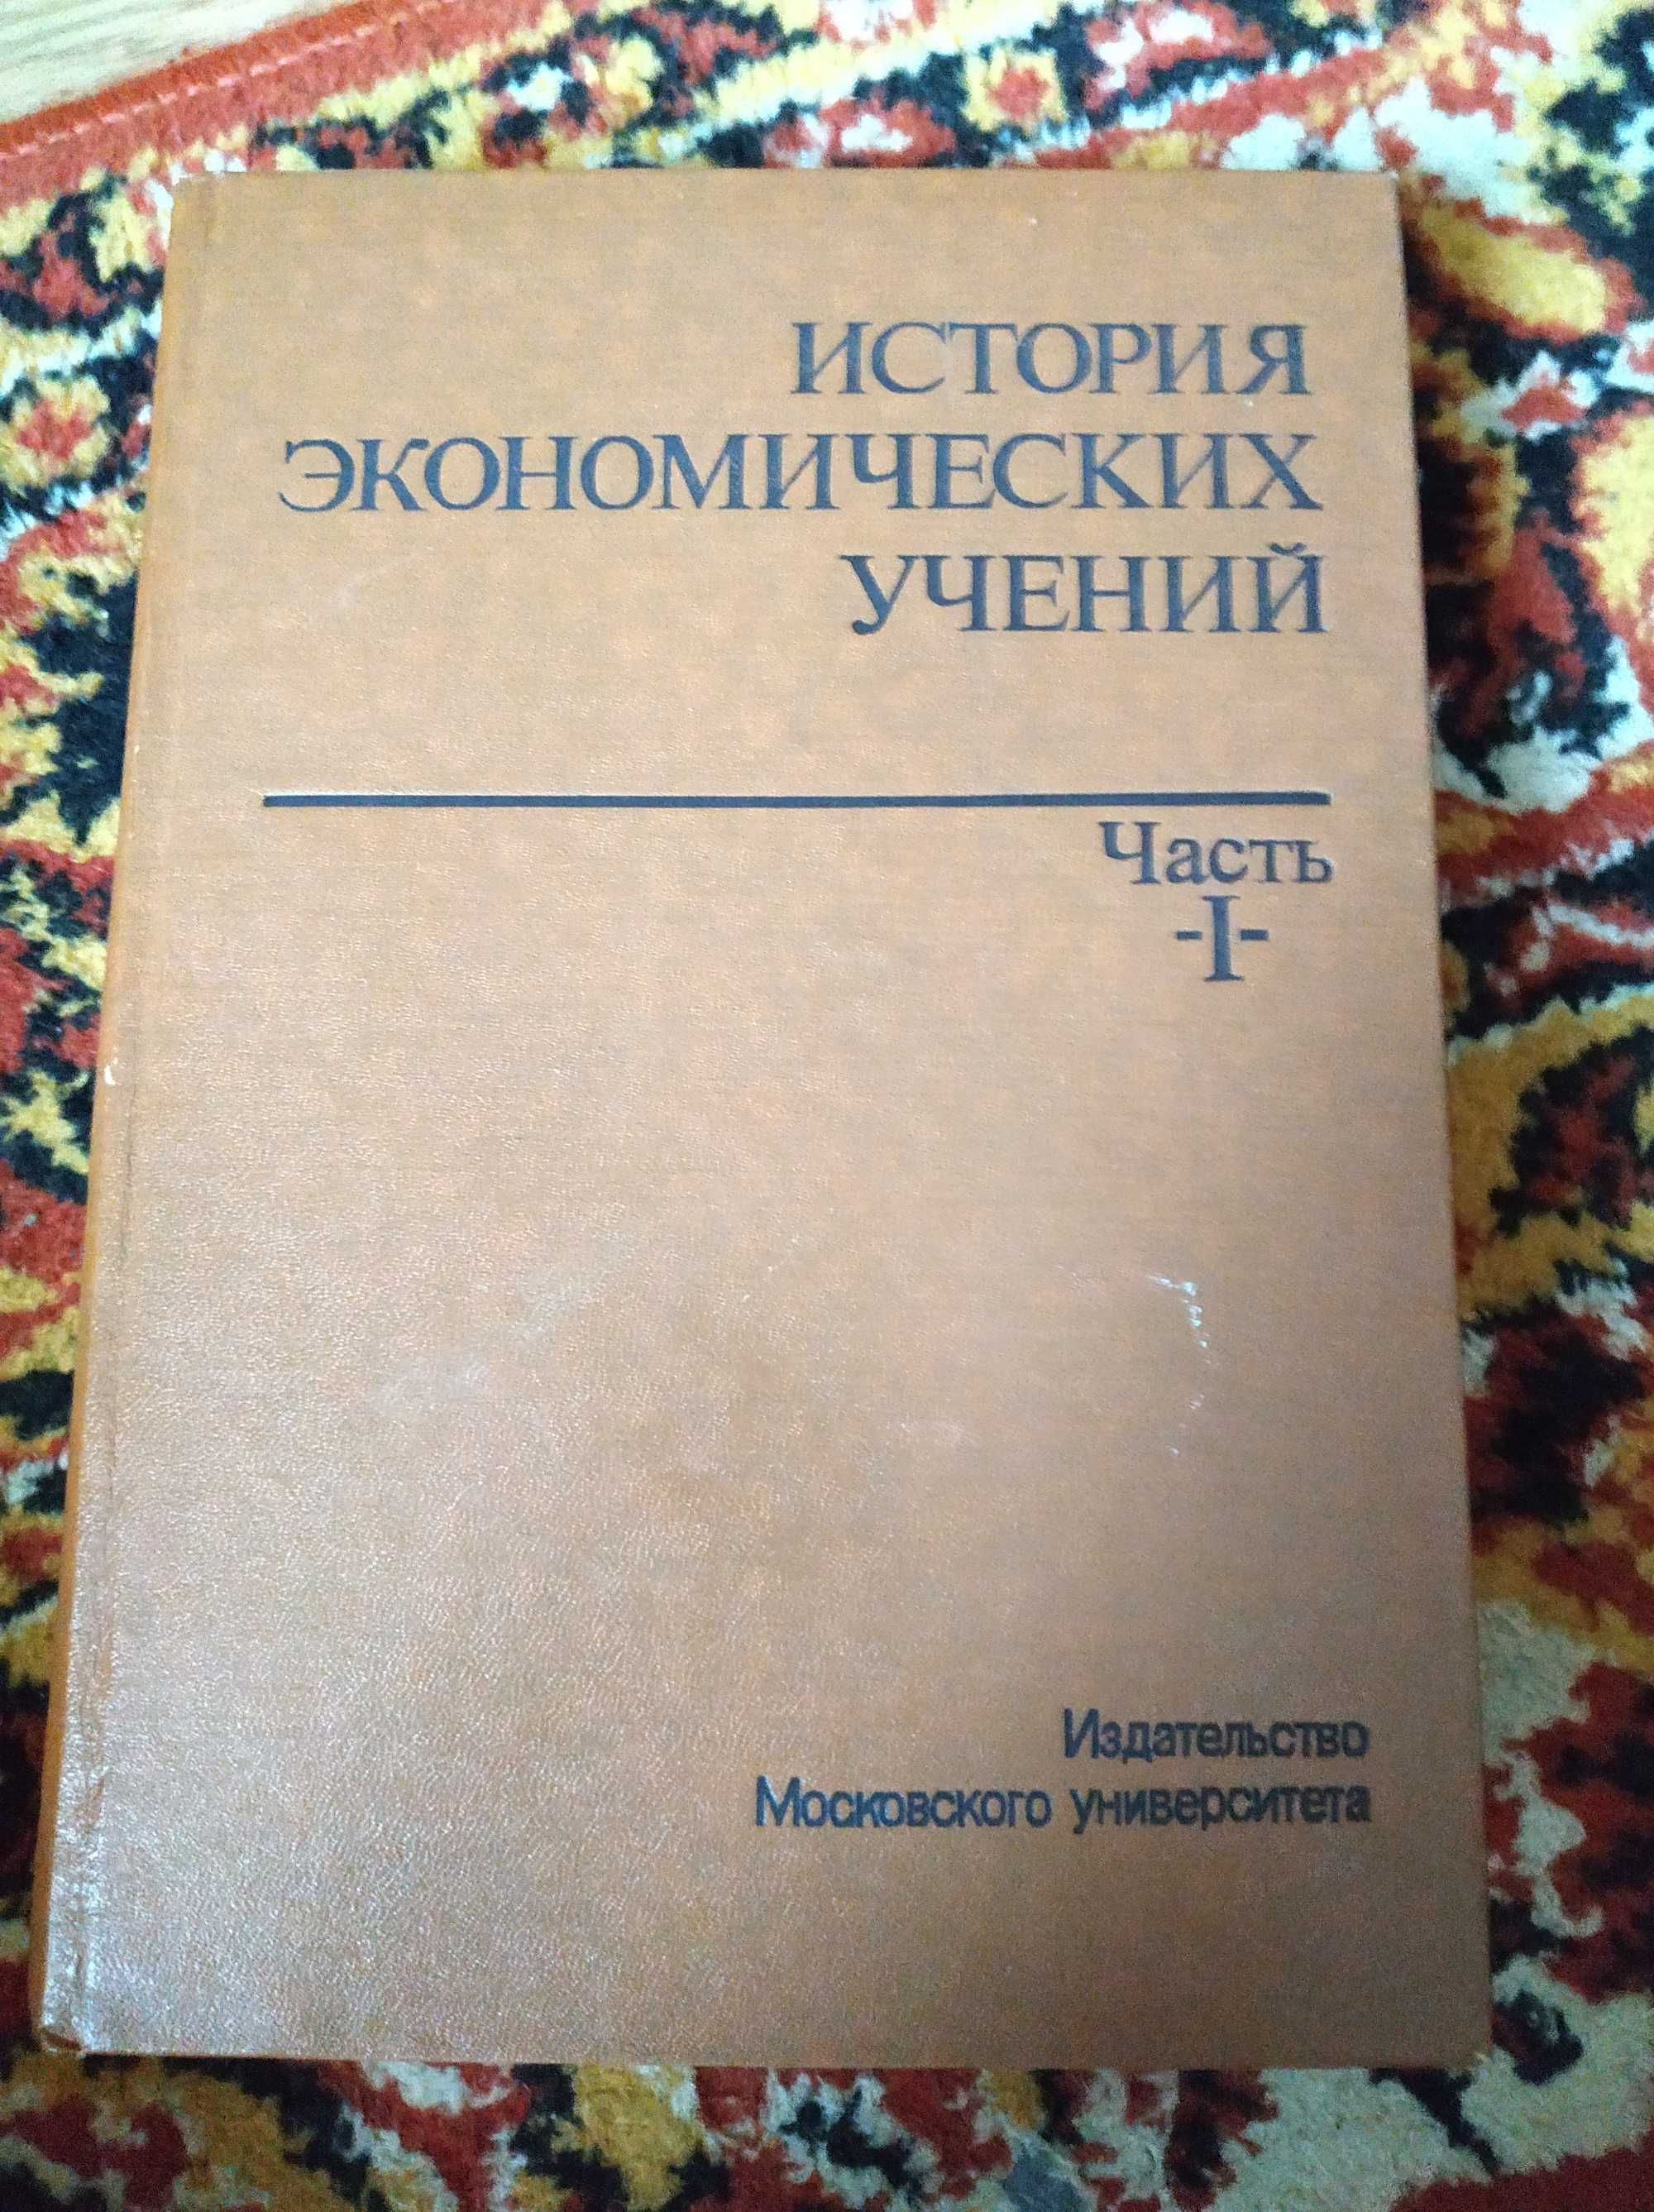 Книги різні ХХ-го століття (рос. мовою) (оголошення №10)